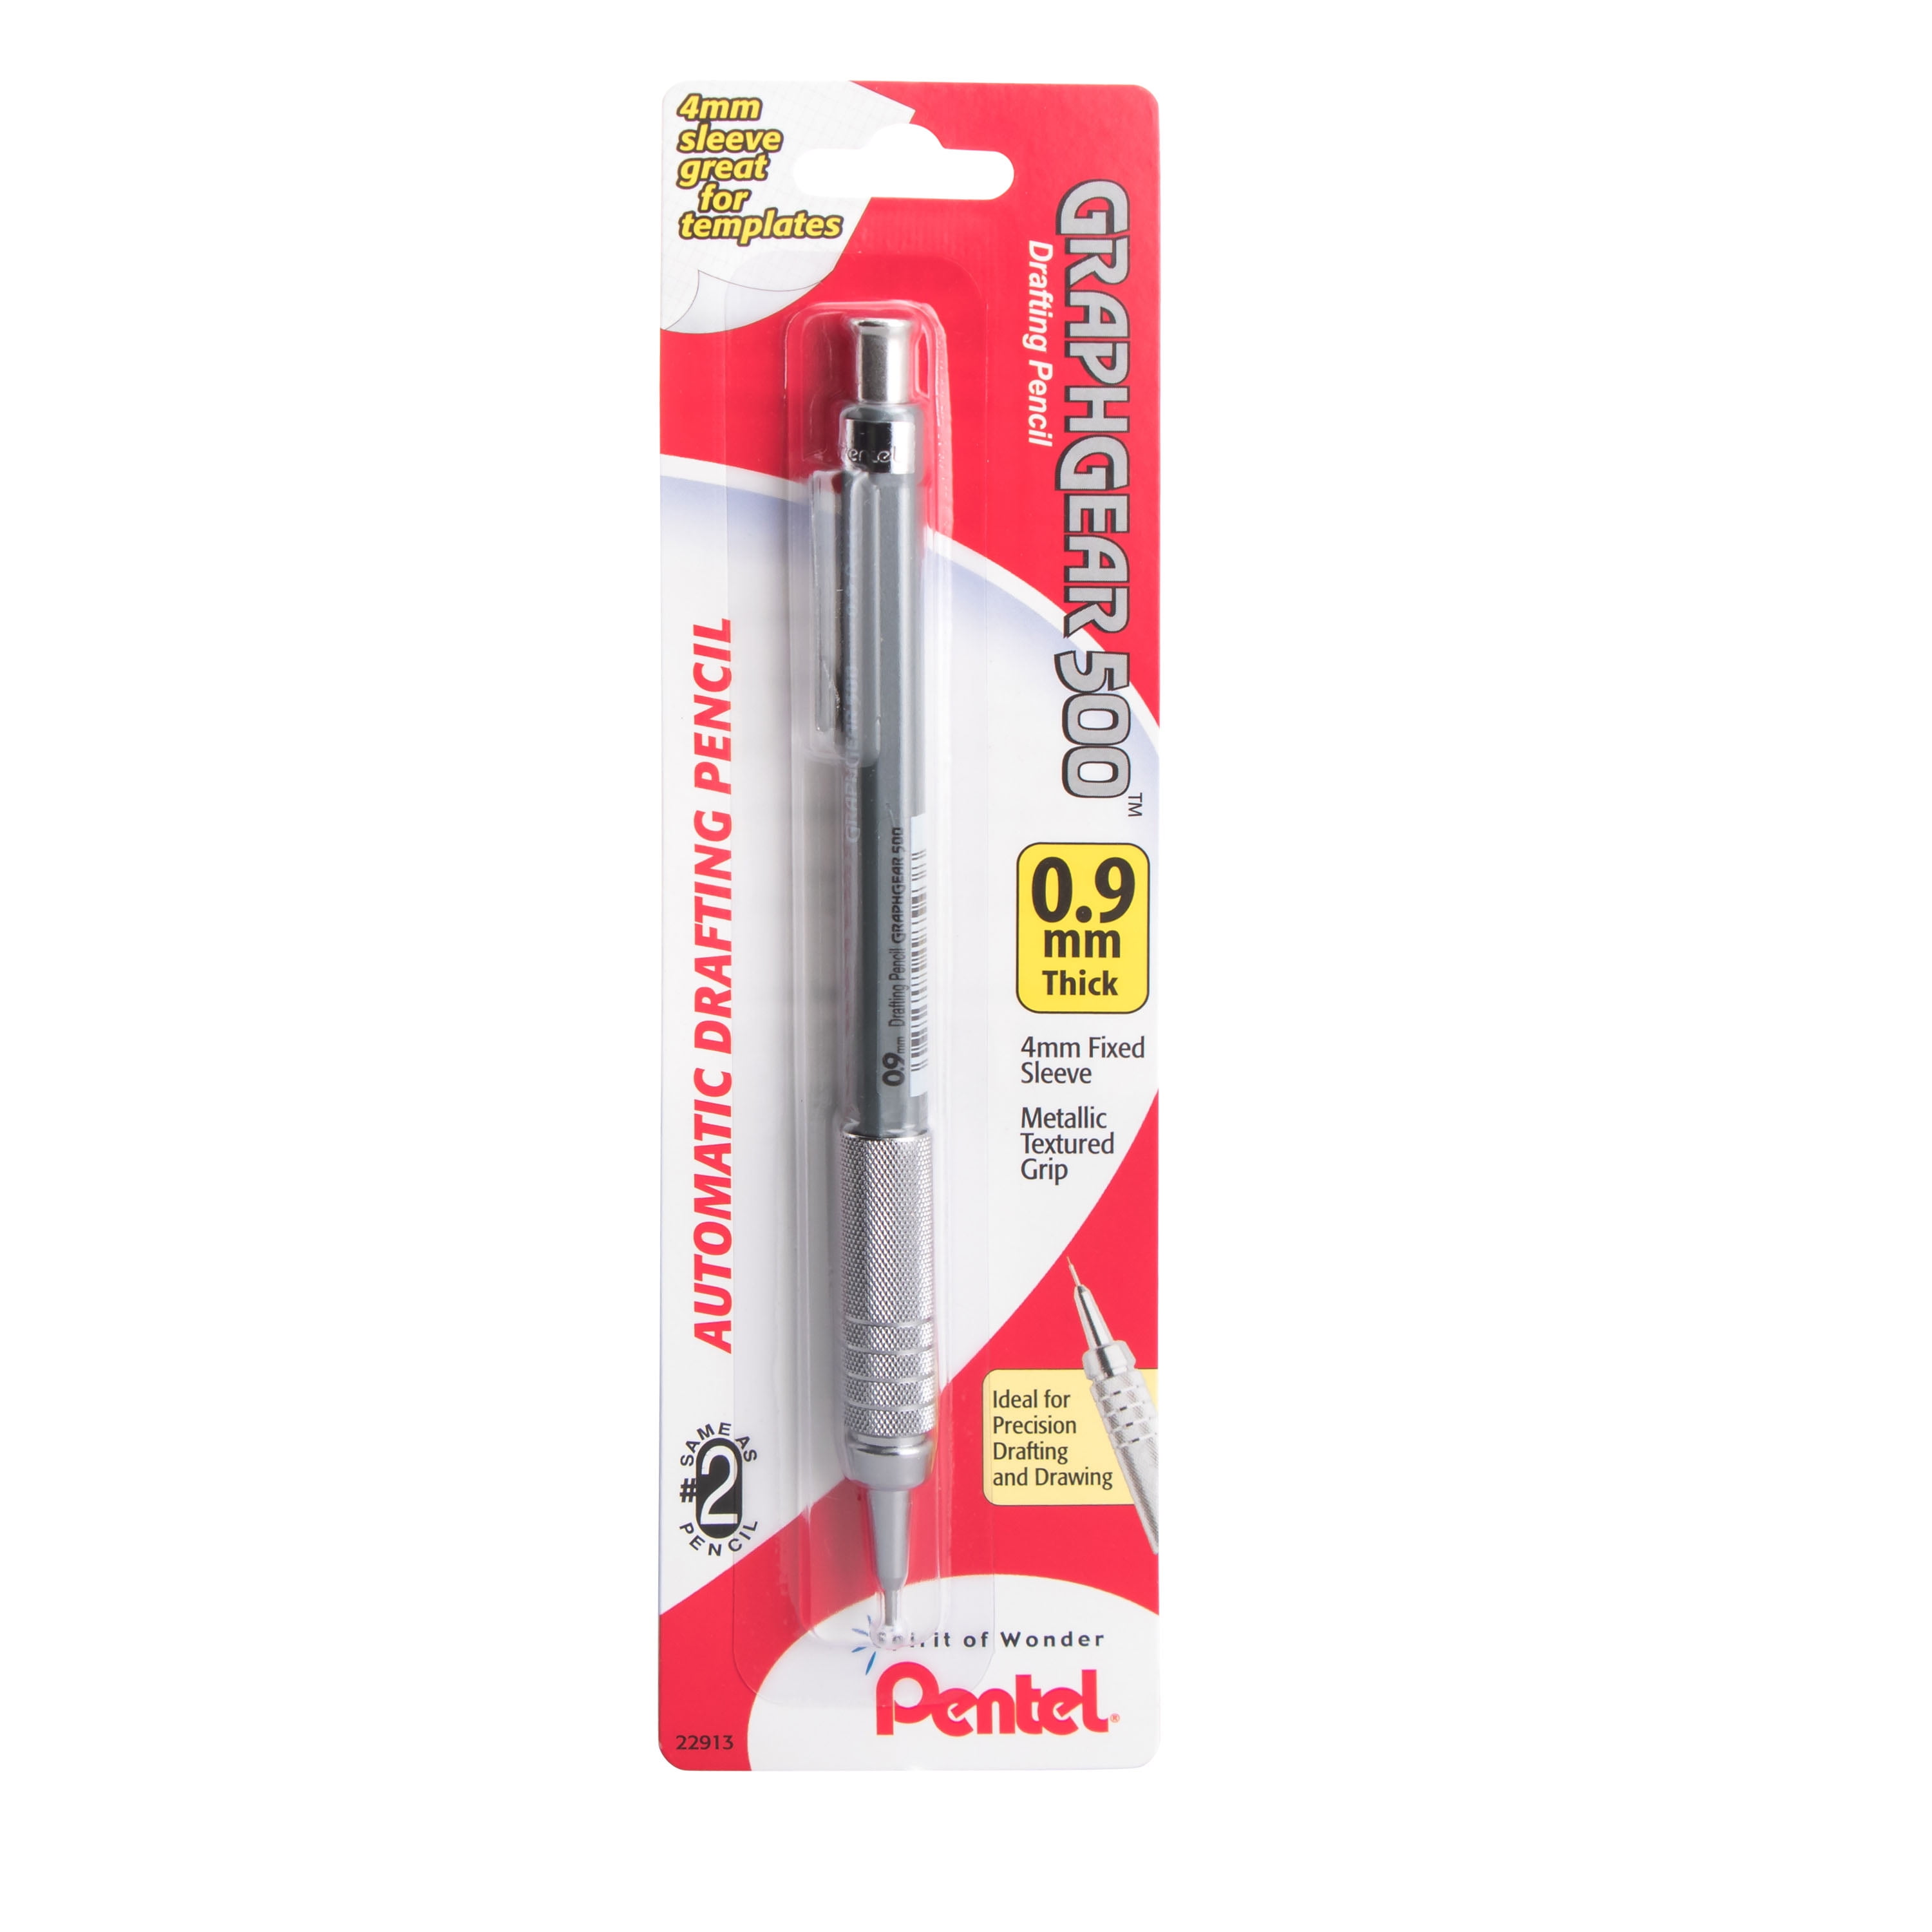 Animal Print Novelty Mechanical Pencil 3 Designs. 0.5mm HB Lead & Eraser Tip 